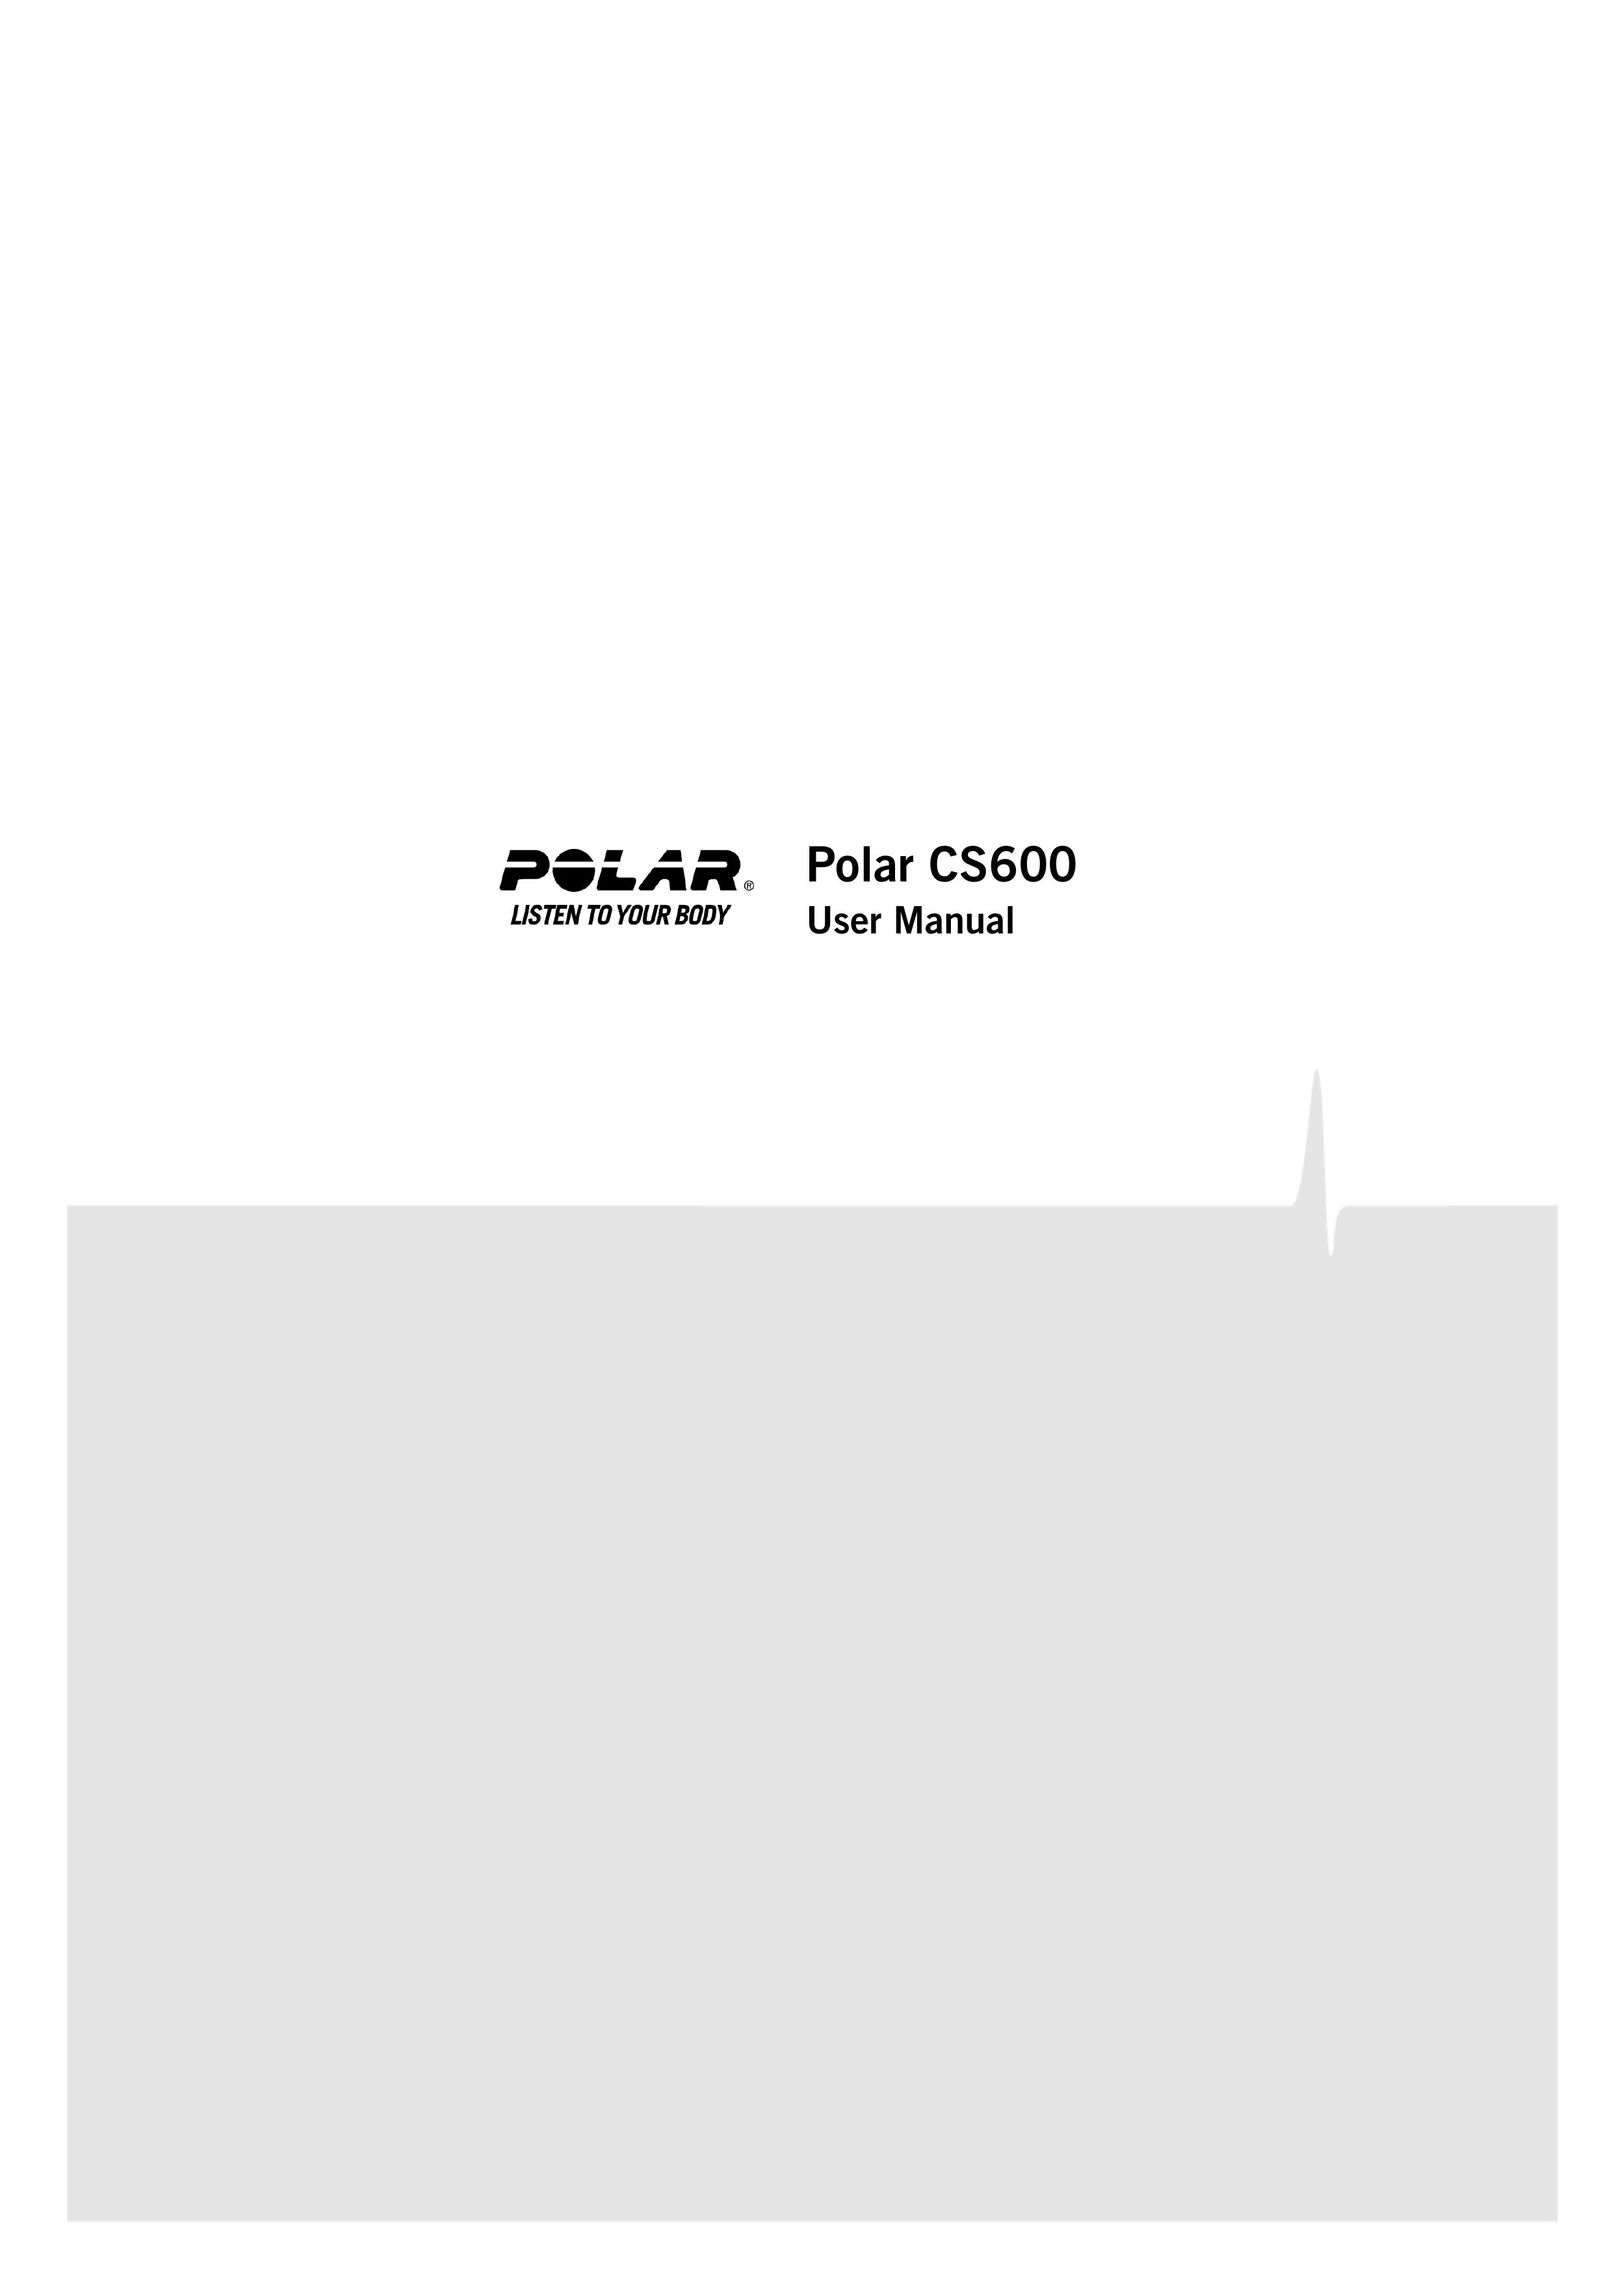 Polar CS600 Cyclometer User Manual